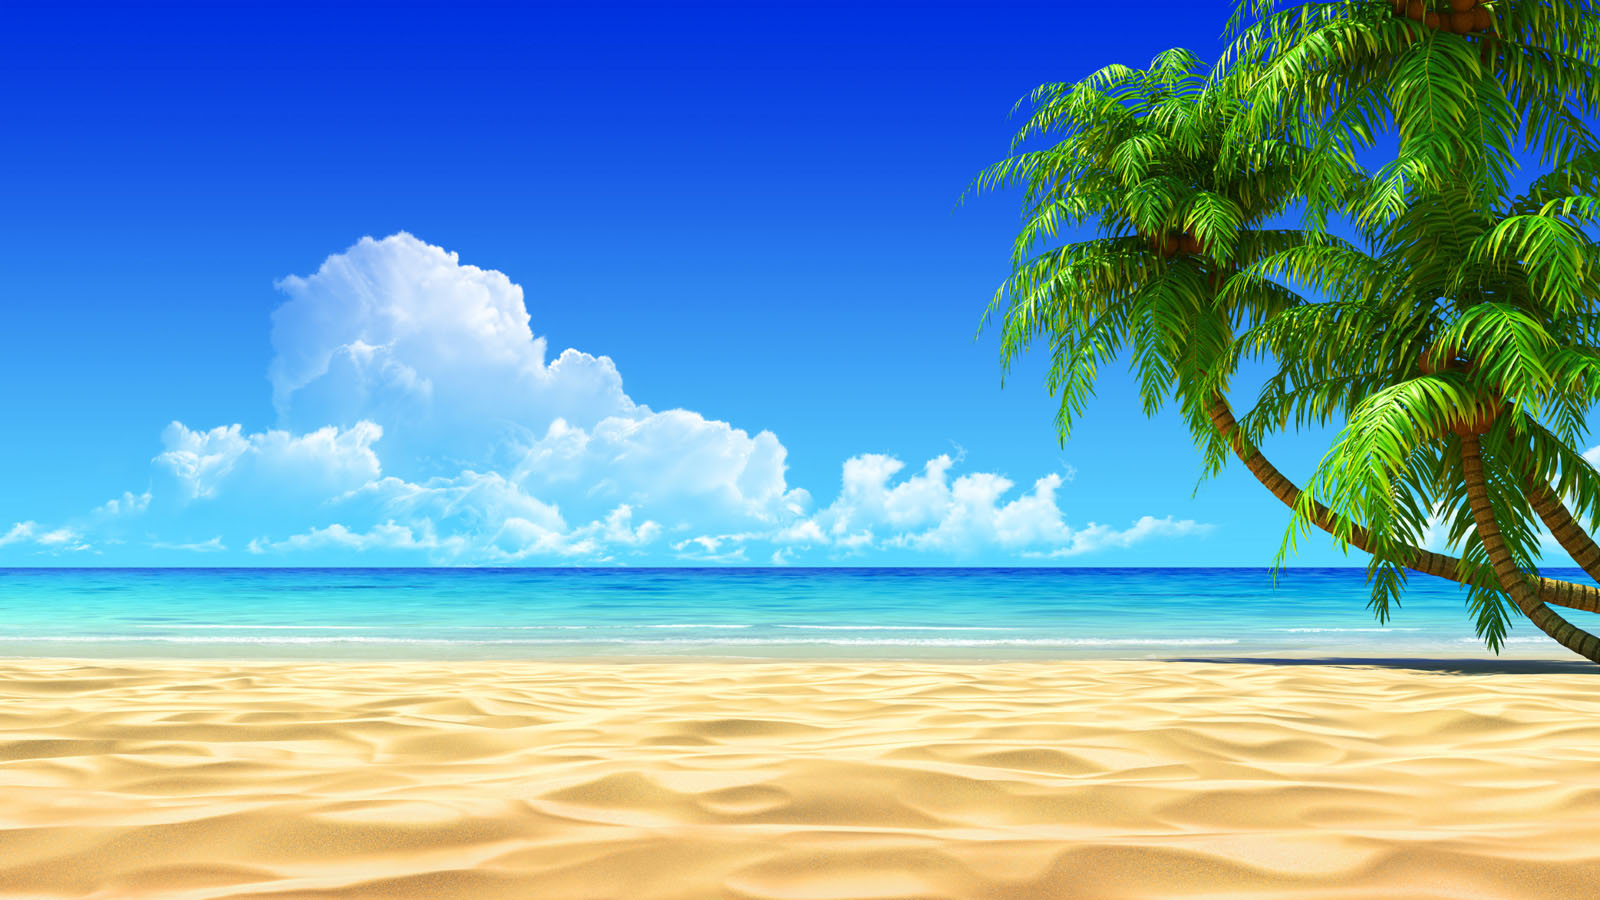 Hình nền bãi biển 4K sẽ khiến bạn đắm mình trong không gian không thể đẹp hơn. Với nước biển trong xanh và cát trắng mịn, bạn sẽ được trải nghiệm một khoảng không tuyệt vời và đắm chìm trong những giây phút thư giãn. Hãy cùng tải hình ảnh này về để trang trí cho màn hình của mình nhé!